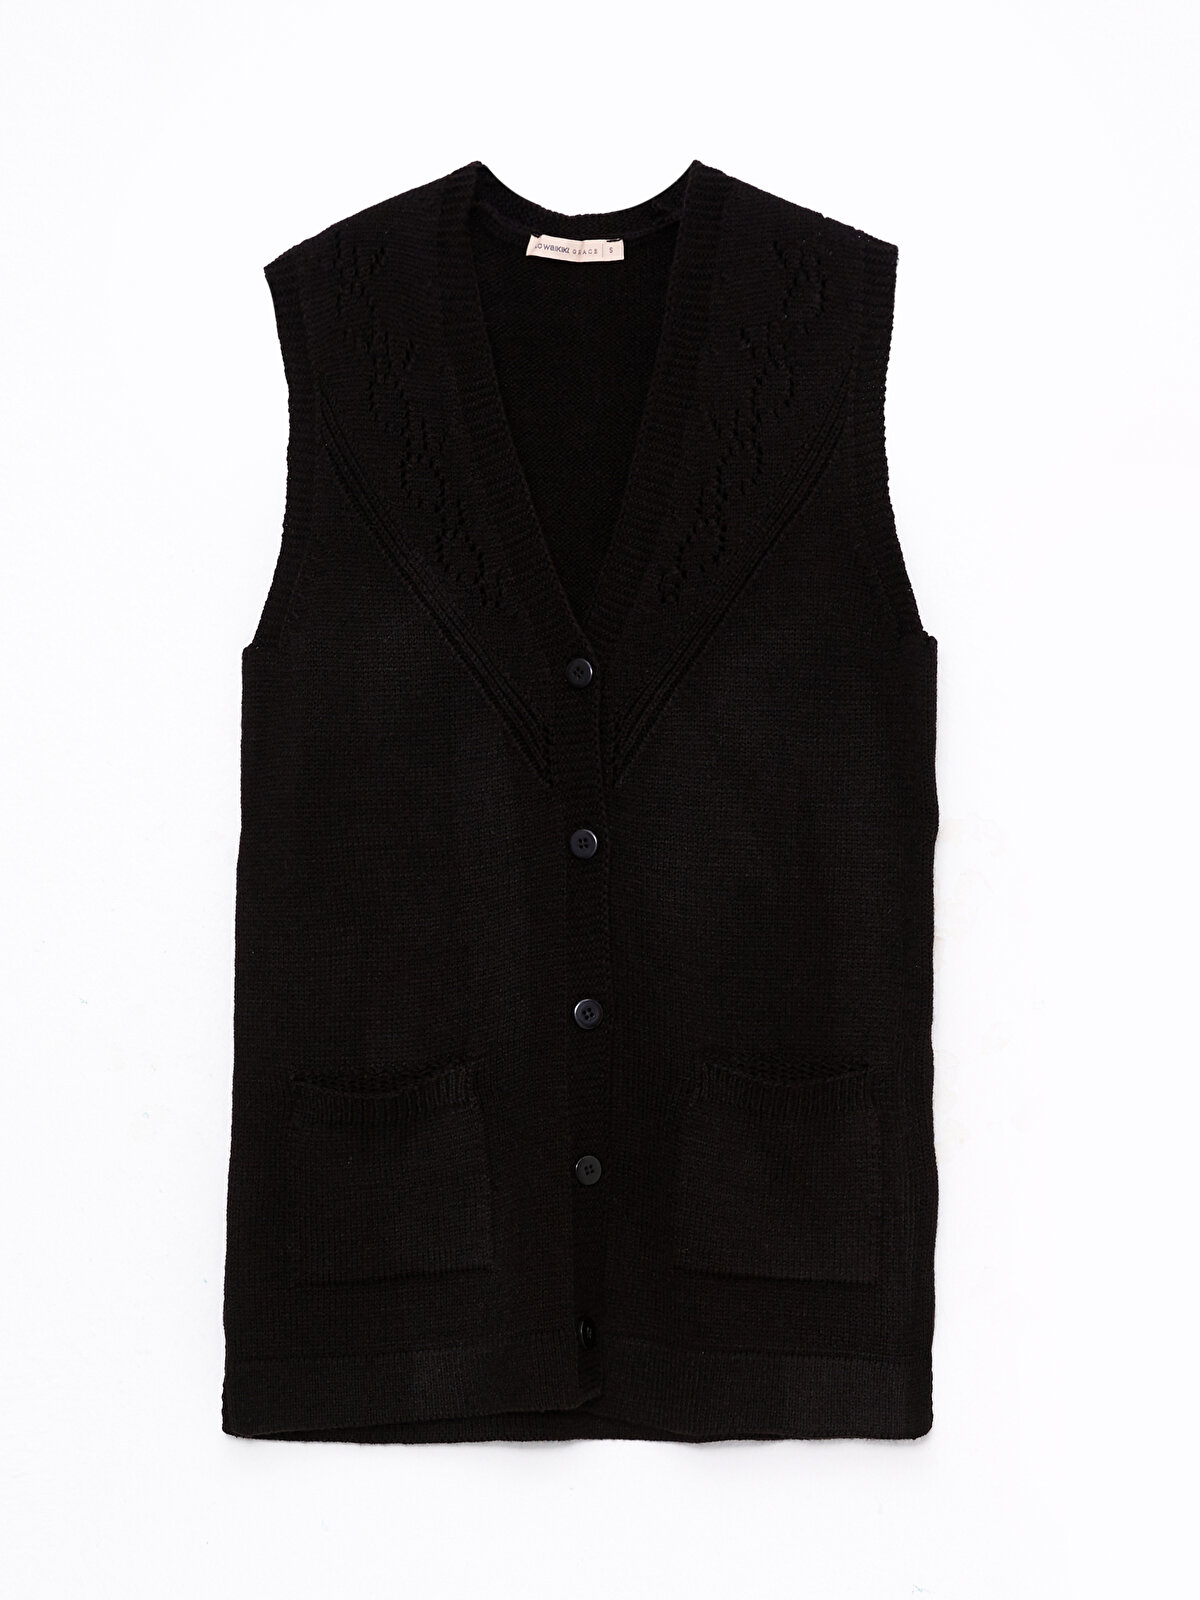 驚きの値段】 18AW size2 vest knit 名作 v-neck unused ベスト - www